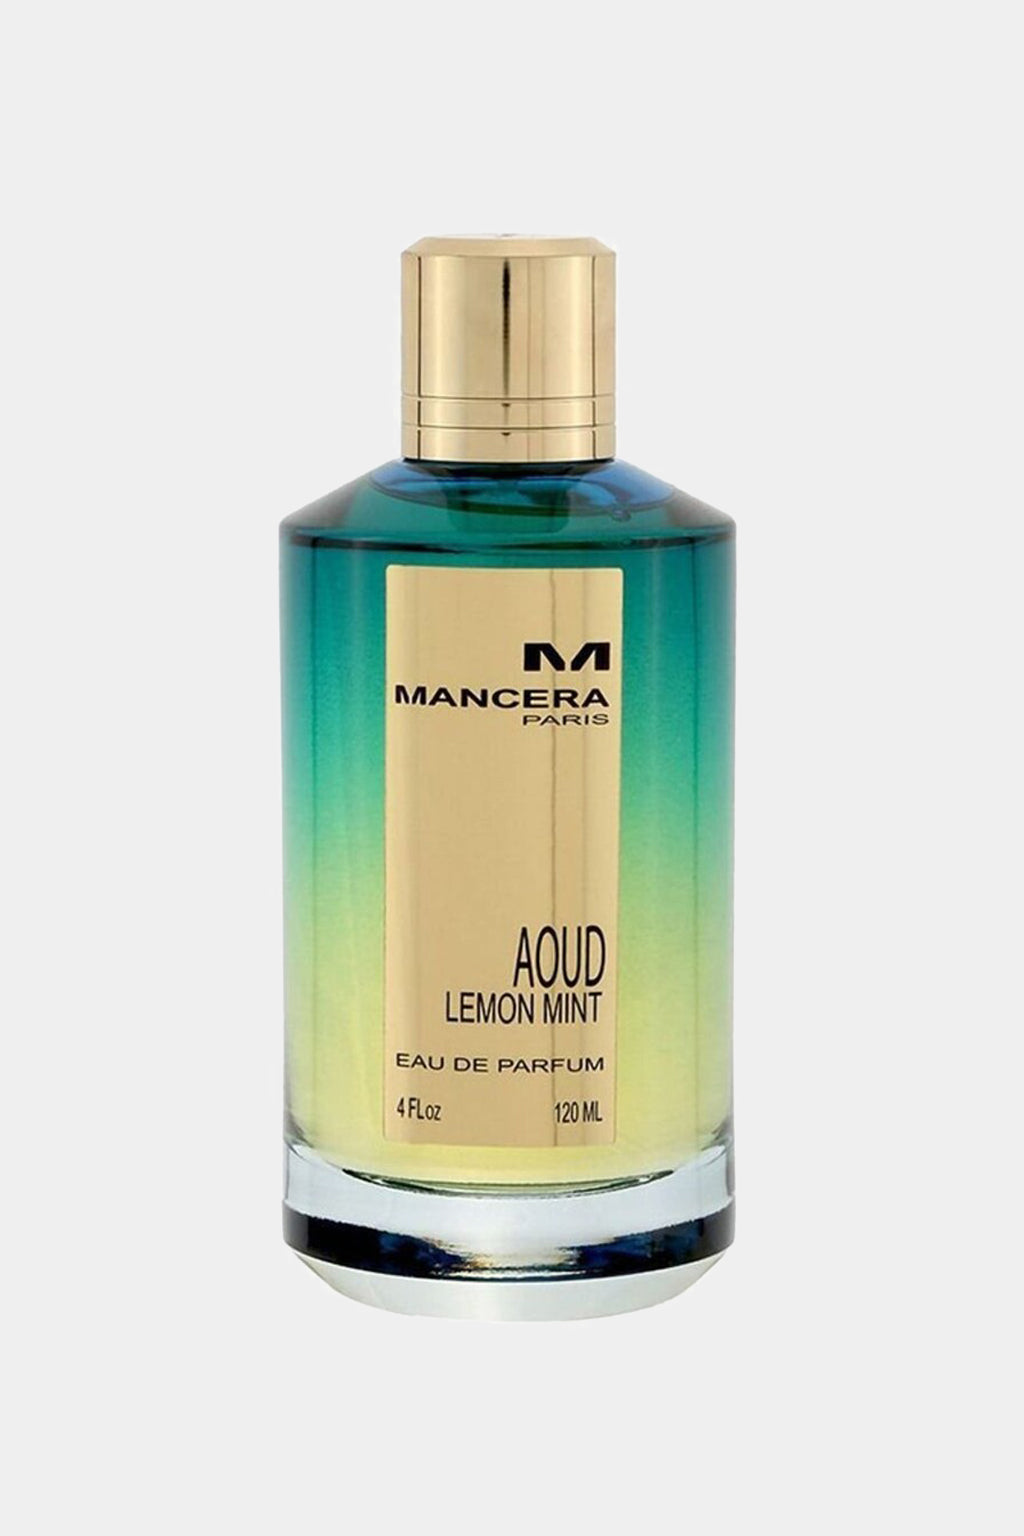 Mancera - Aoud Lemon Mint Eau de Parfum